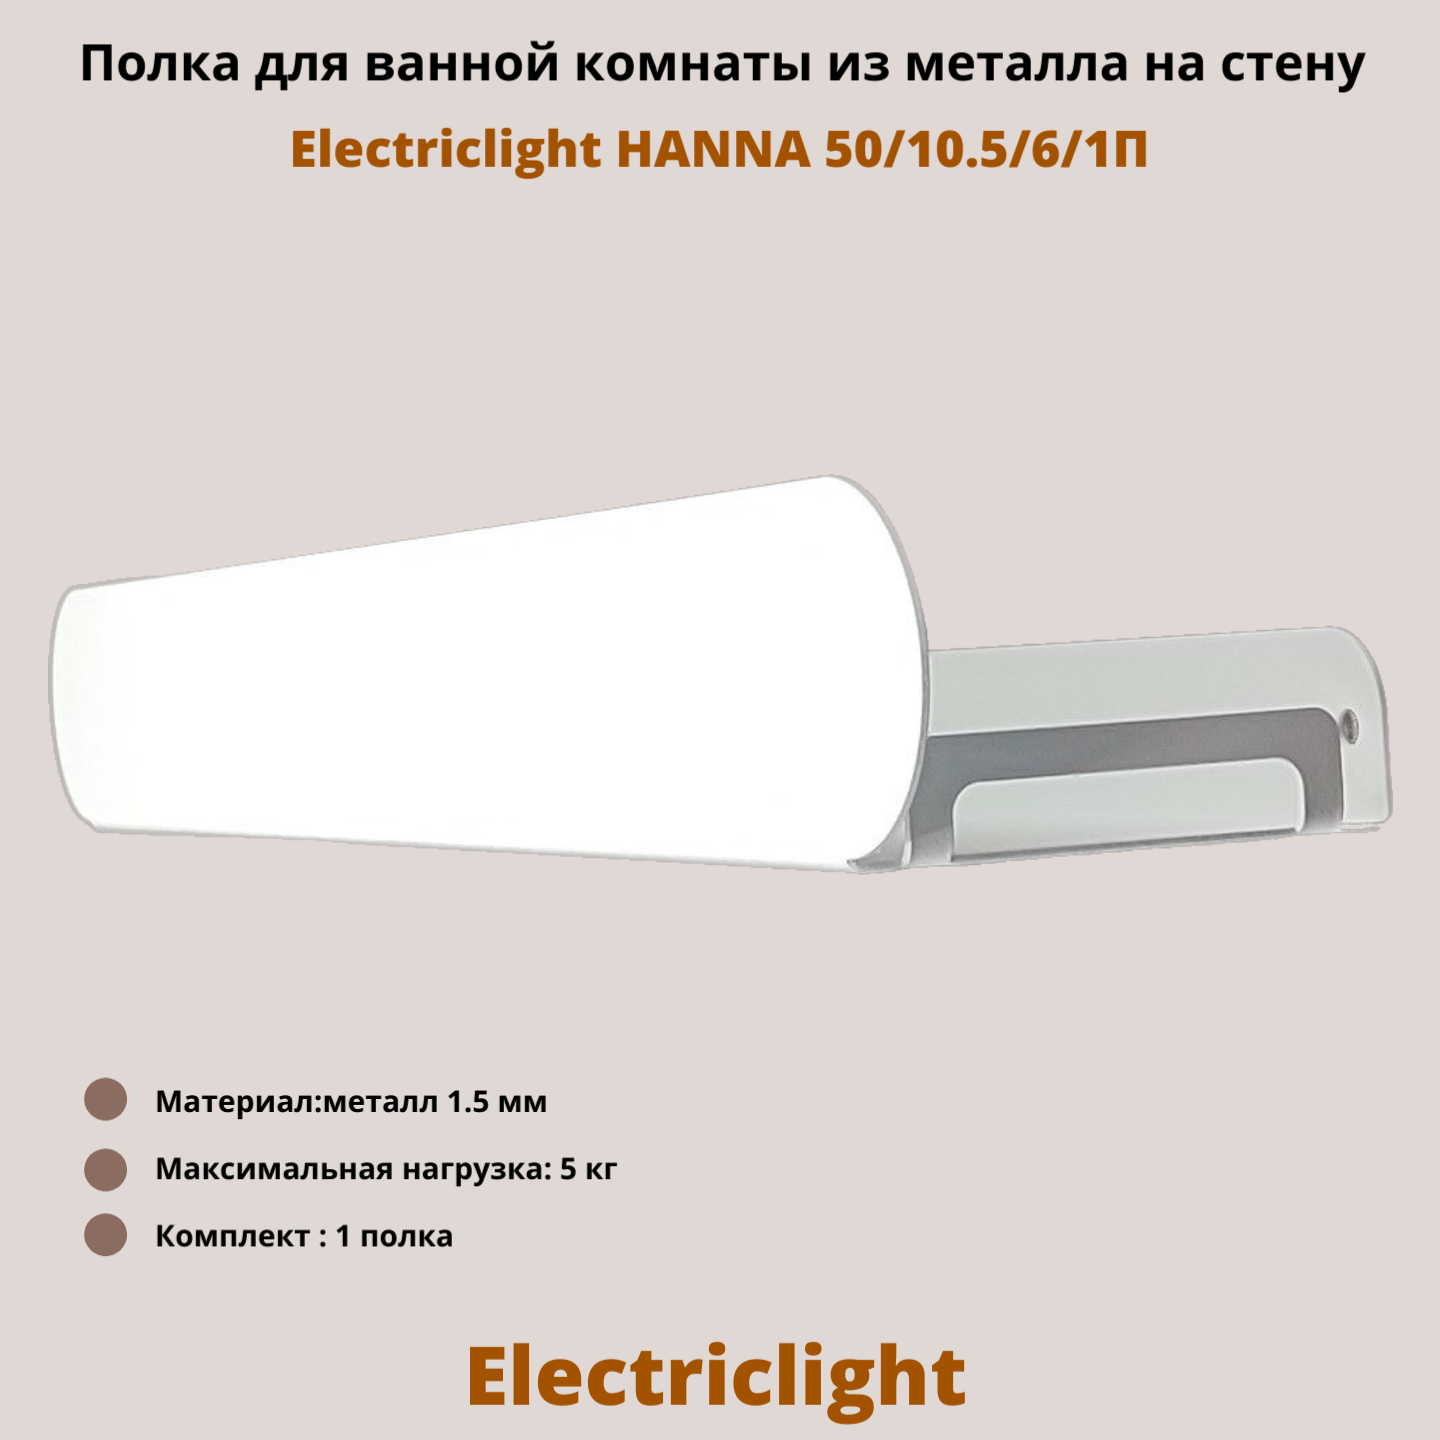 Полка для ванной комнаты из металла Electriclight HANNA 50/10,5/6/1П,1 полка белая